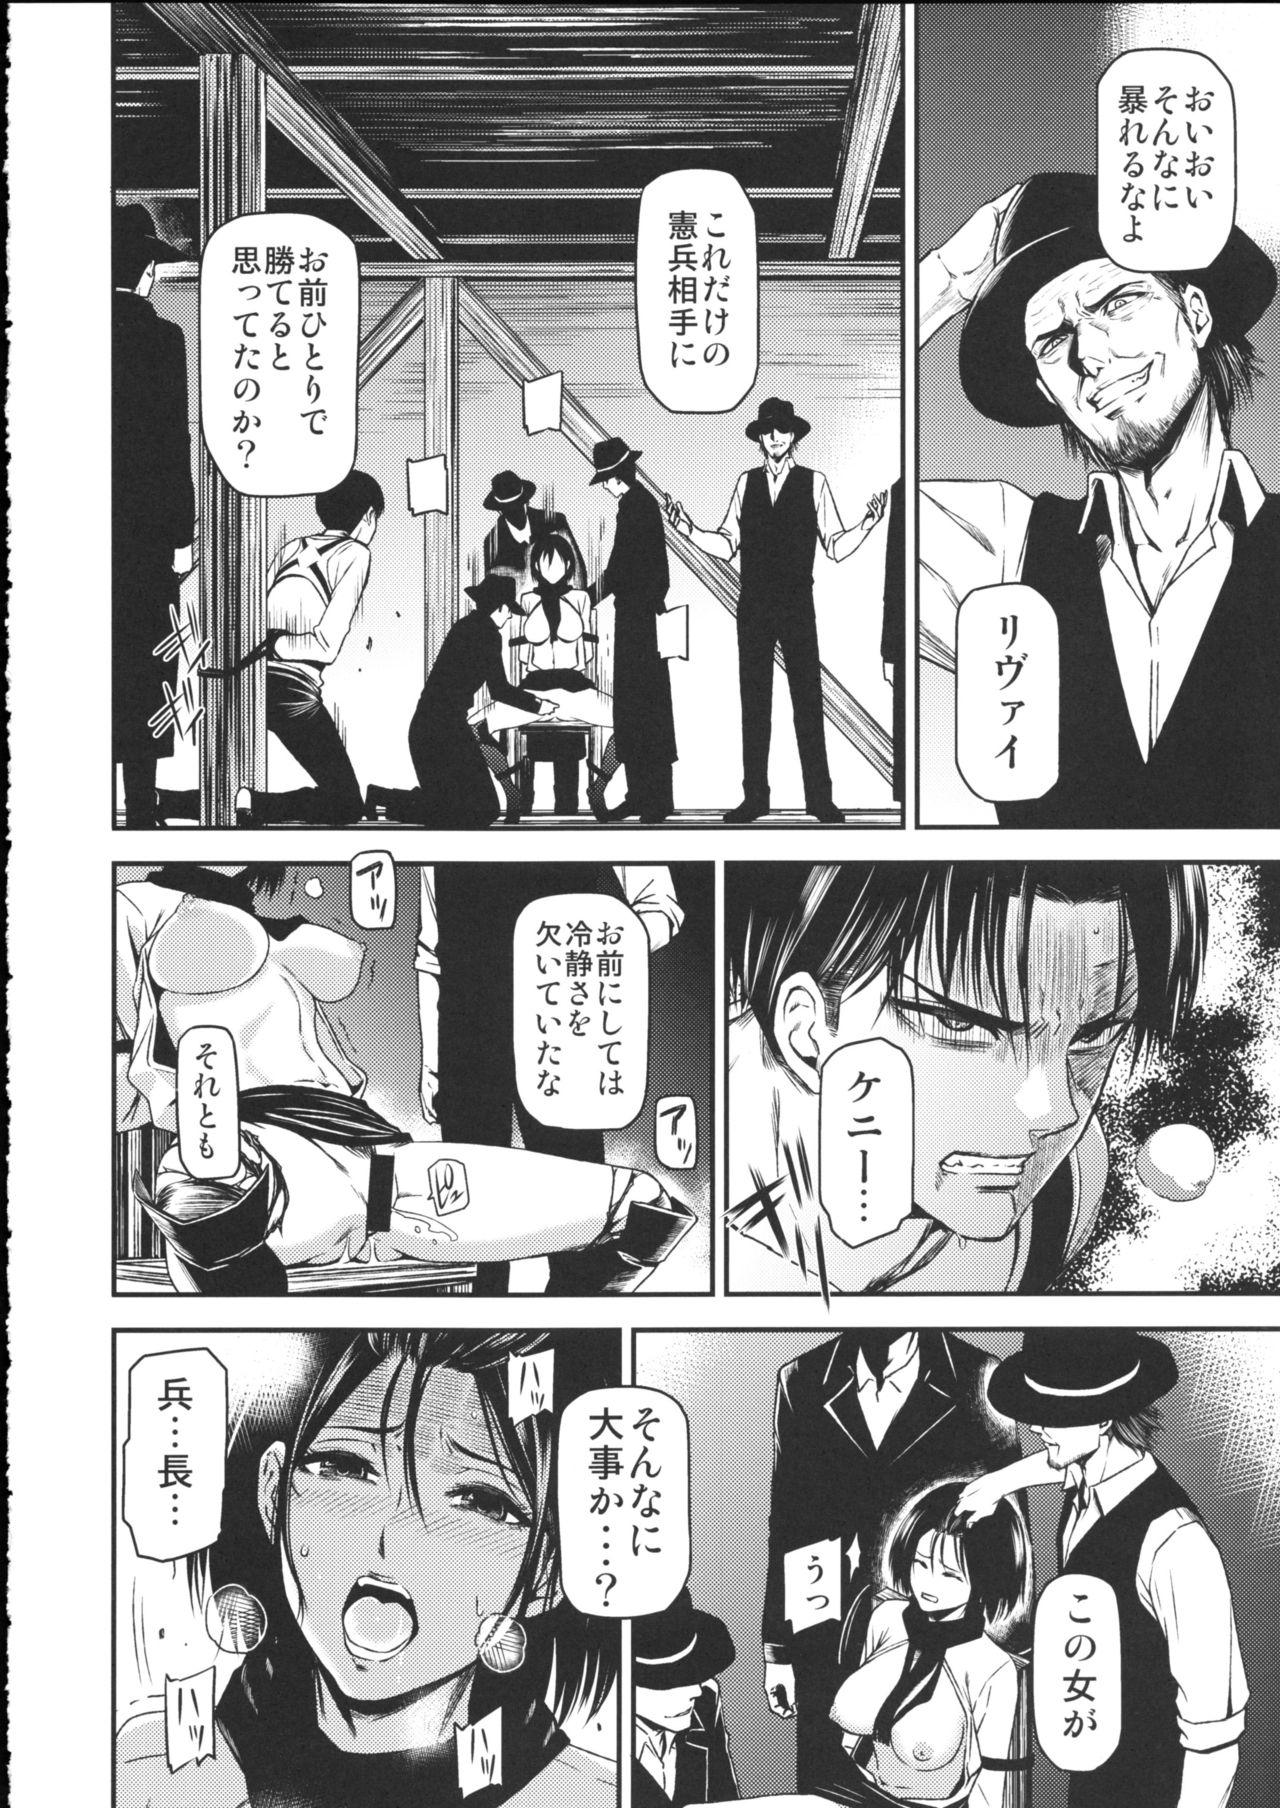 Str8 ATTACK ON KIYOTAN - Shingeki no kyojin Outdoors - Page 6